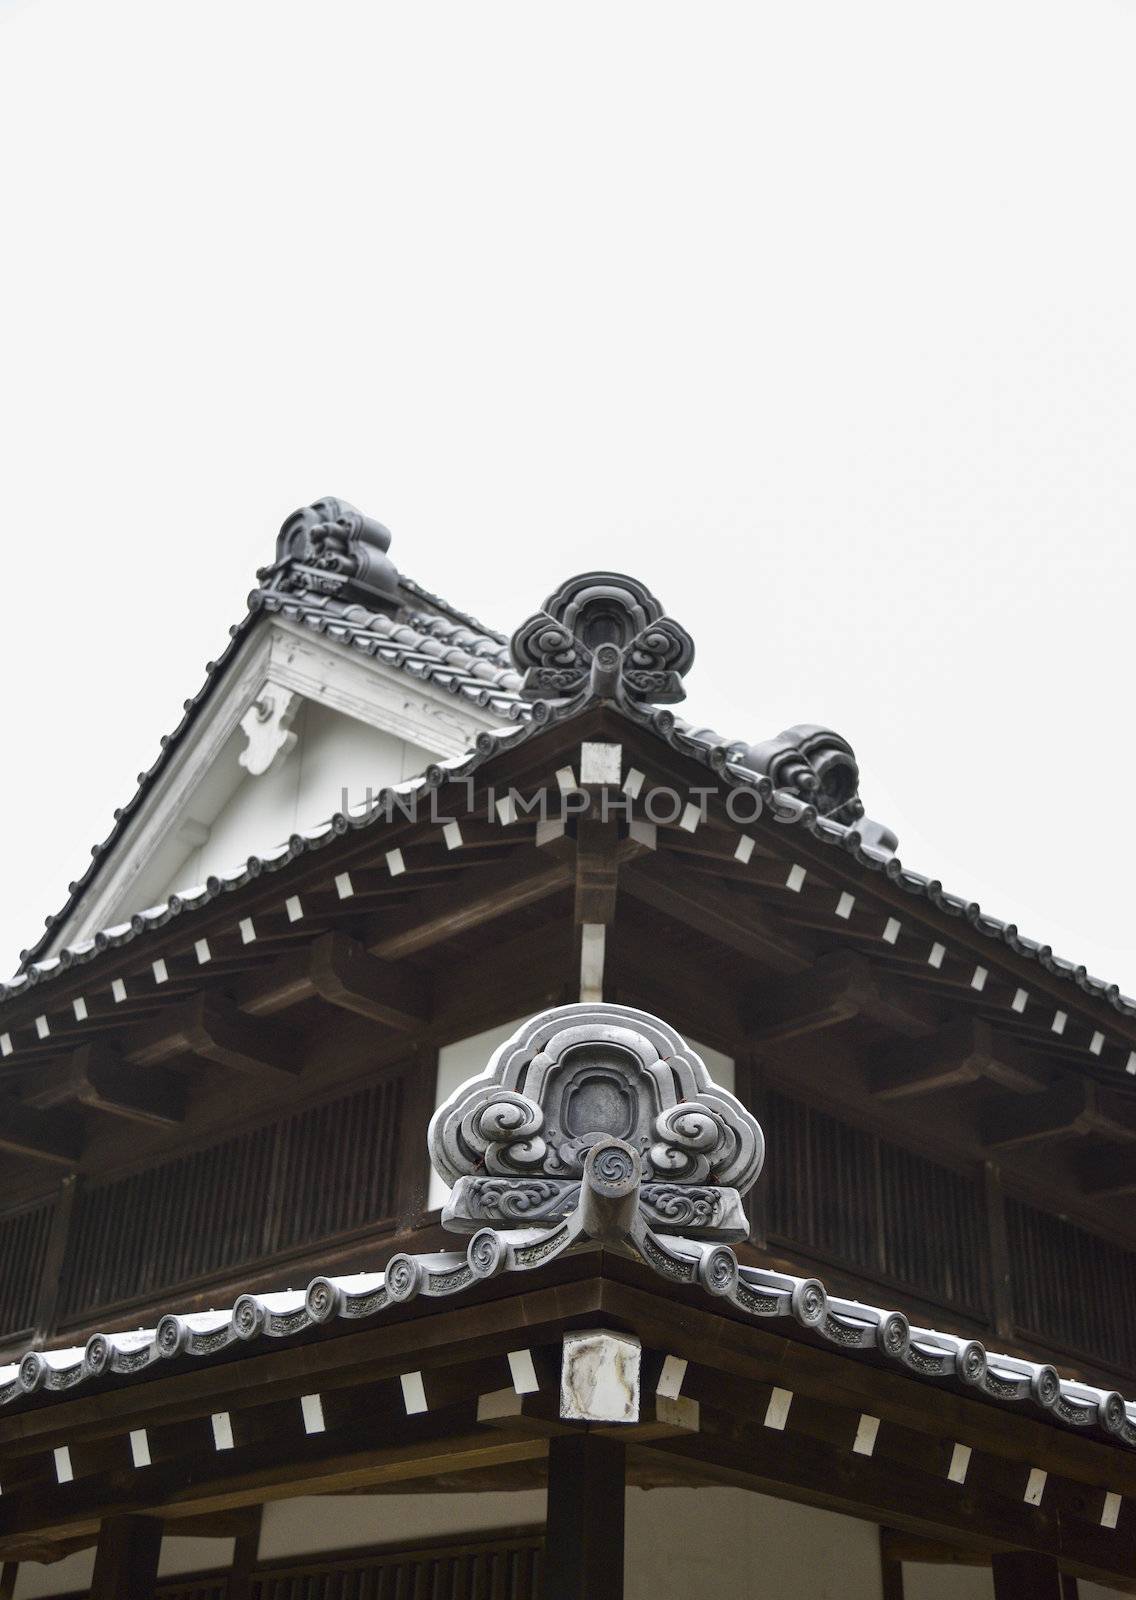 Roof in Japanese style2 by gjeerawut